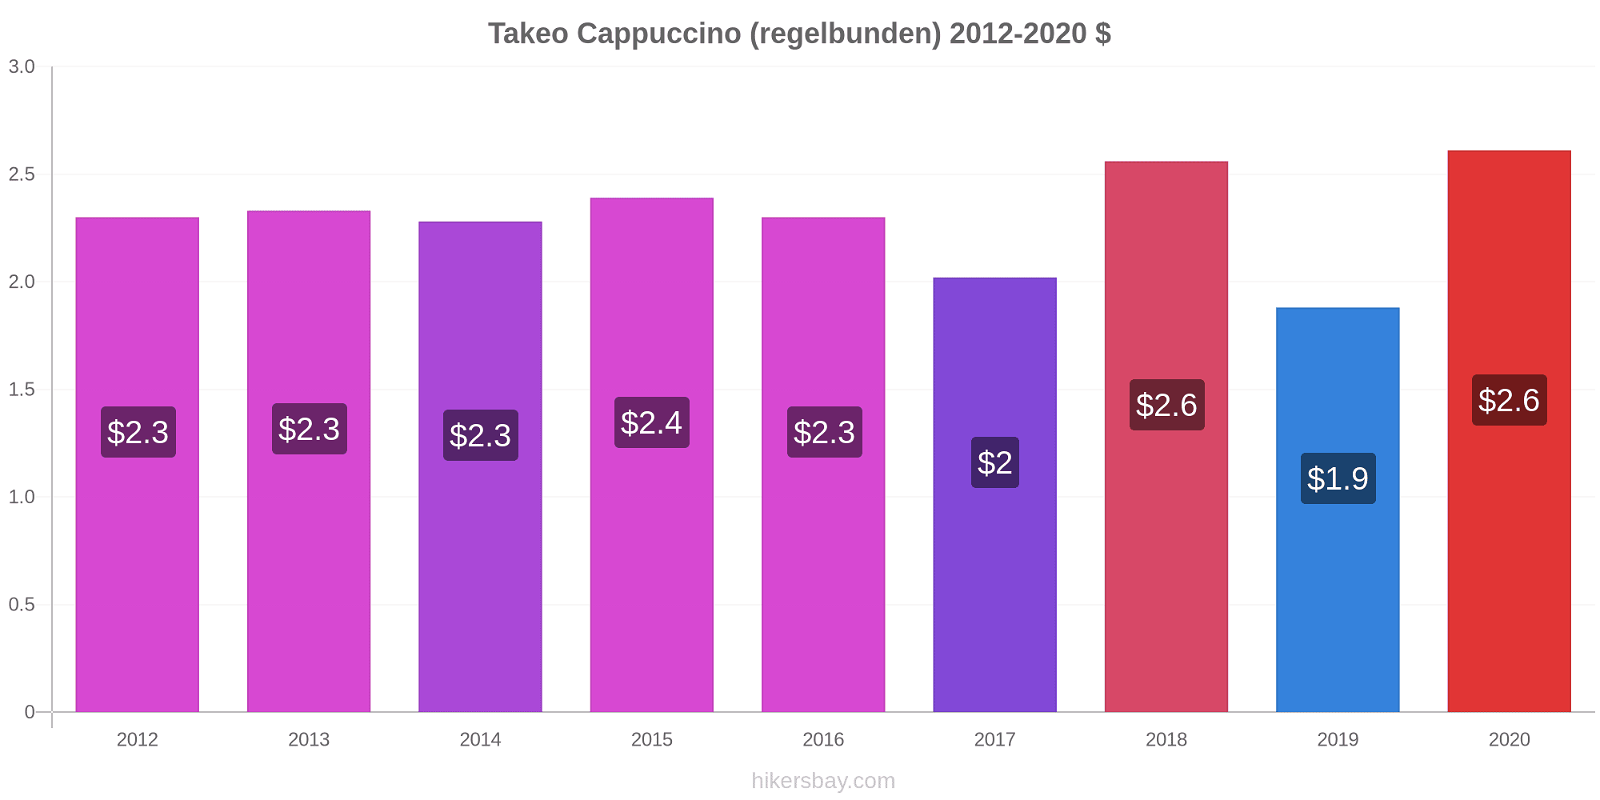 Takeo prisförändringar Cappuccino (regelbunden) hikersbay.com